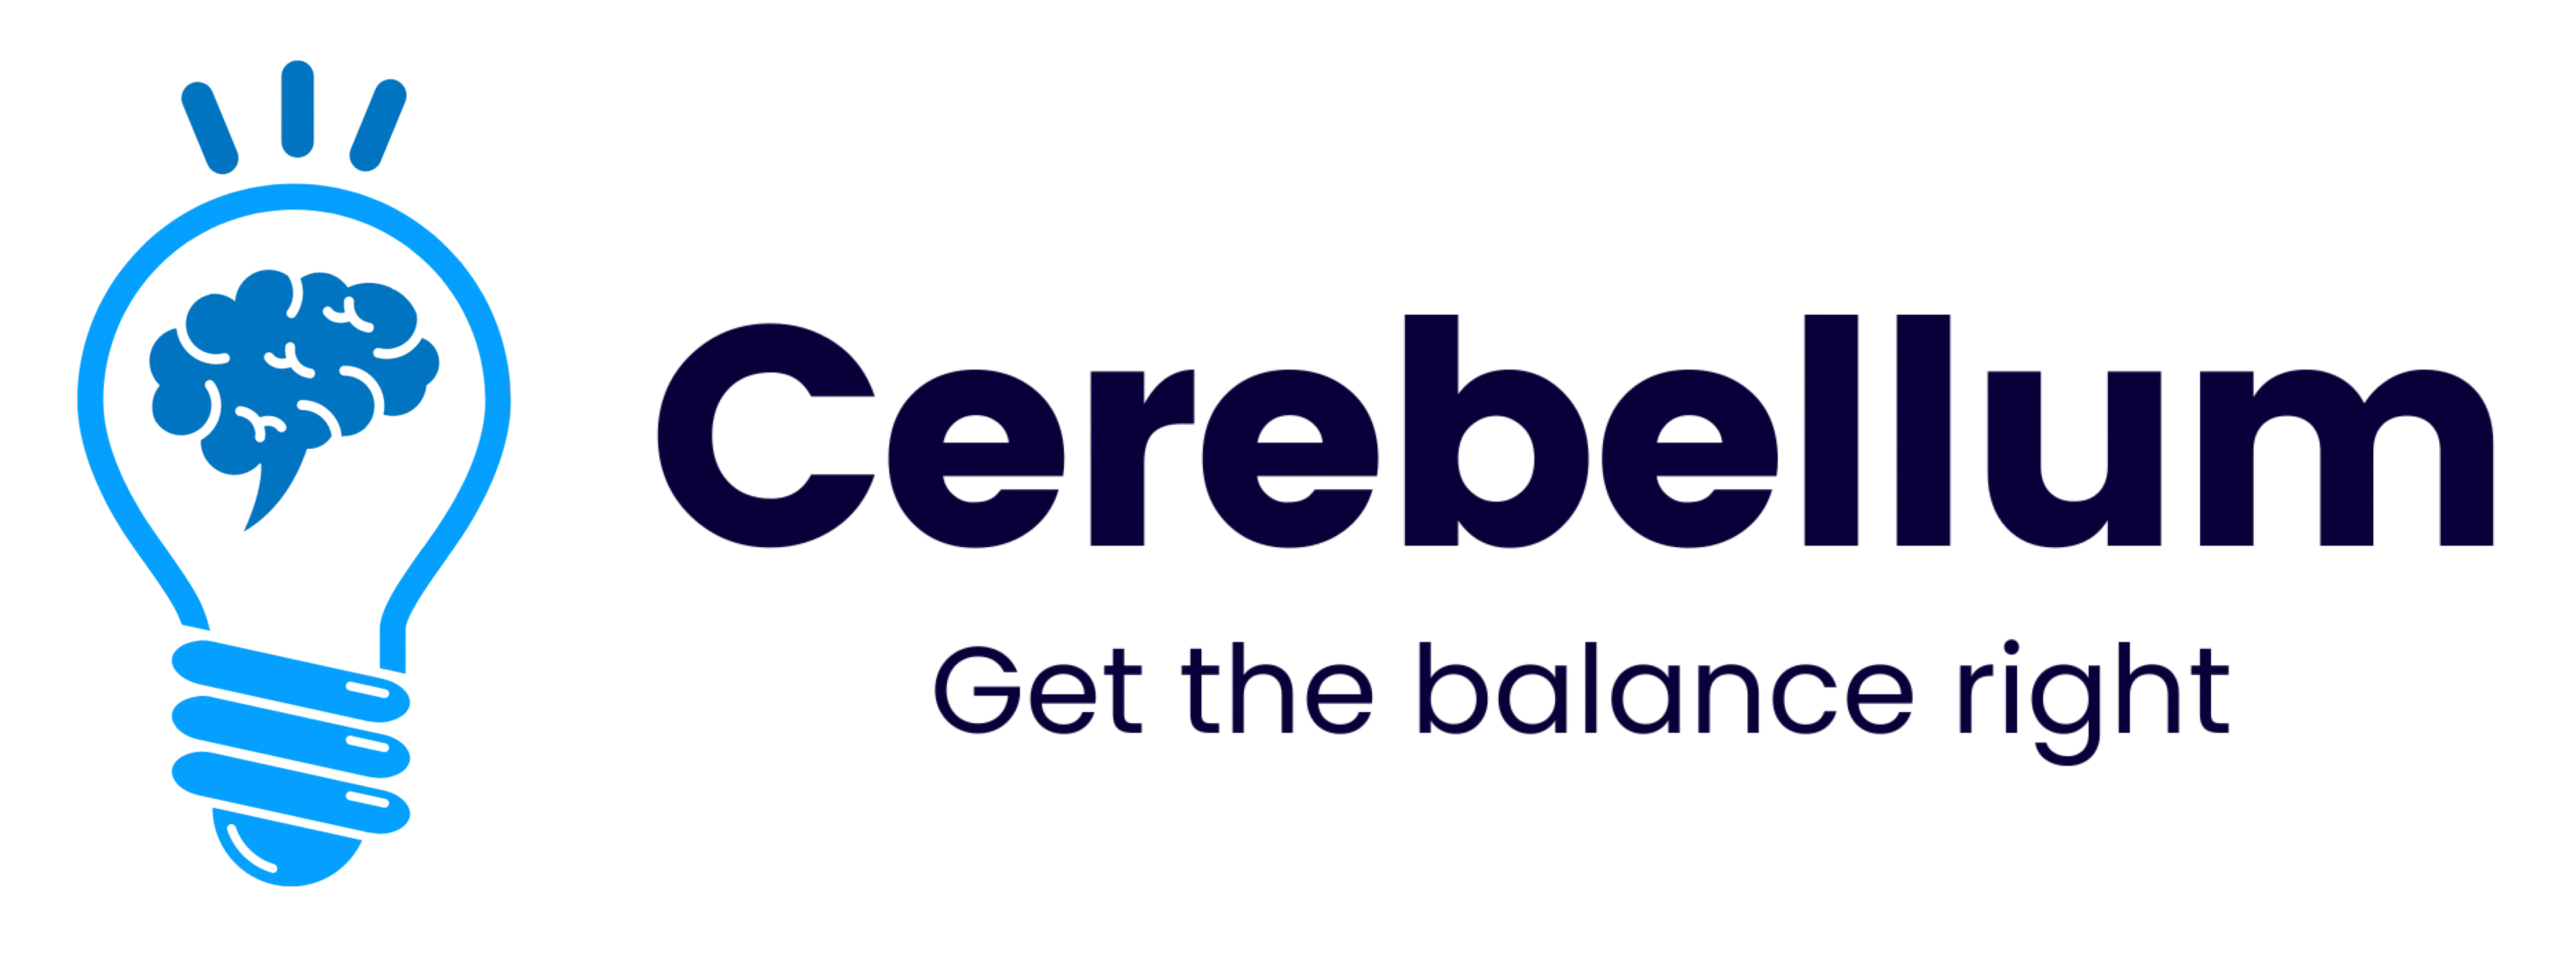 Cerebellum Academy Logo